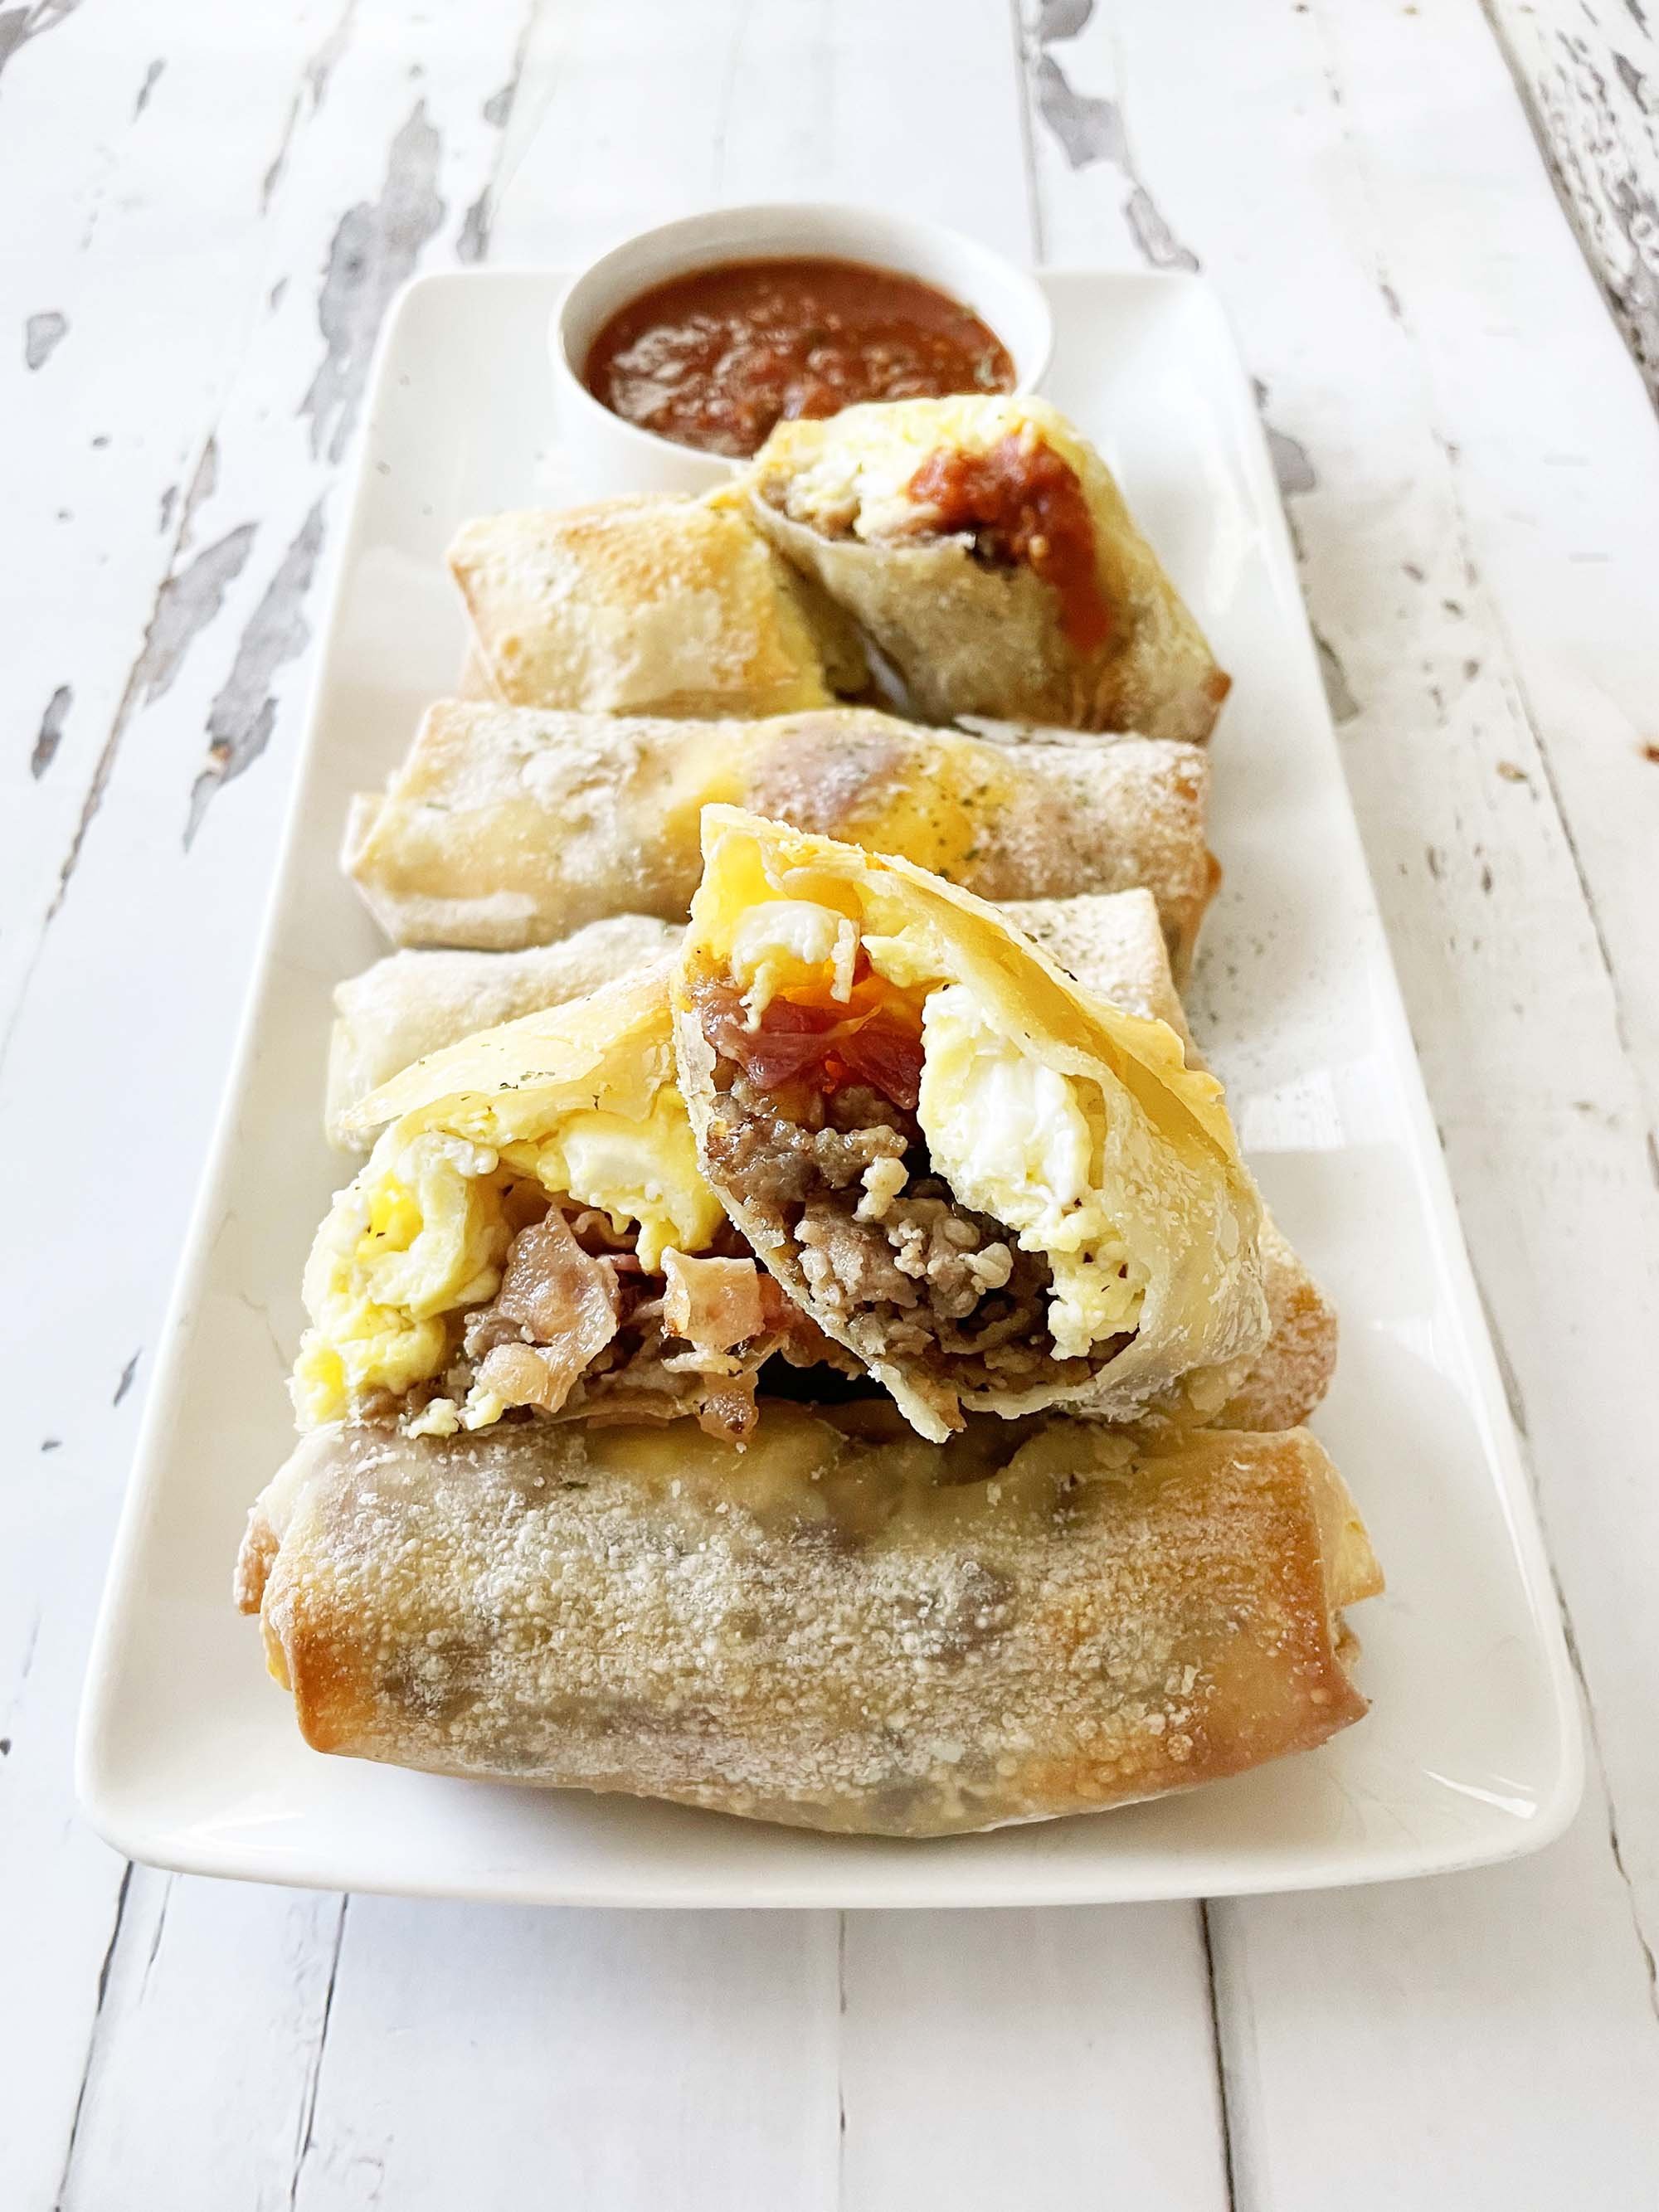 Crispy Breakfast Egg Rolls In The Air Fryer